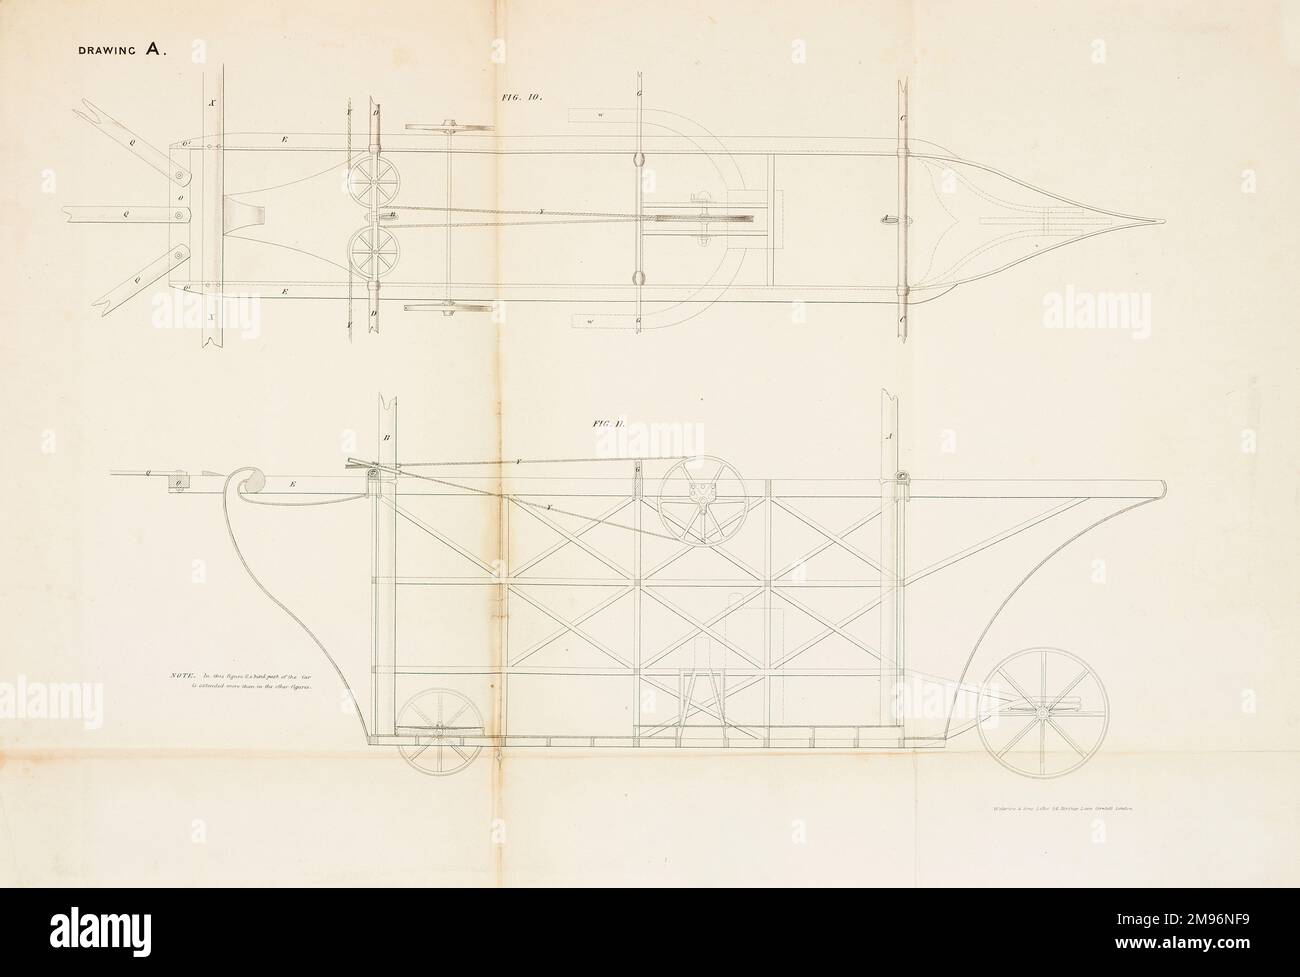 Der Luftdampfwagen – vergrößerte Ansicht des Wagens oder Wagens. Diese Flugmaschine wurde 1842 von William Samuel Henson (1812-1888) und John Stringfellow (1799-1883) patentiert. Stockfoto